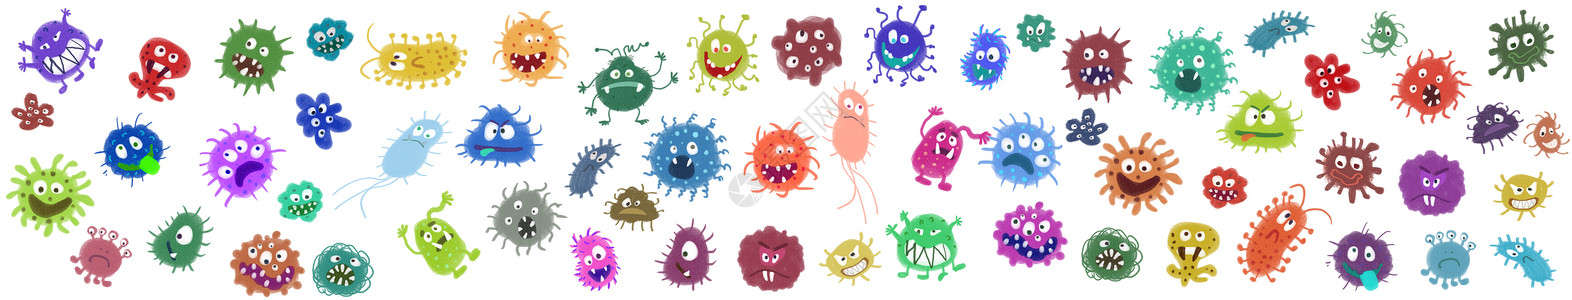 水中微生物细菌病毒元素插画